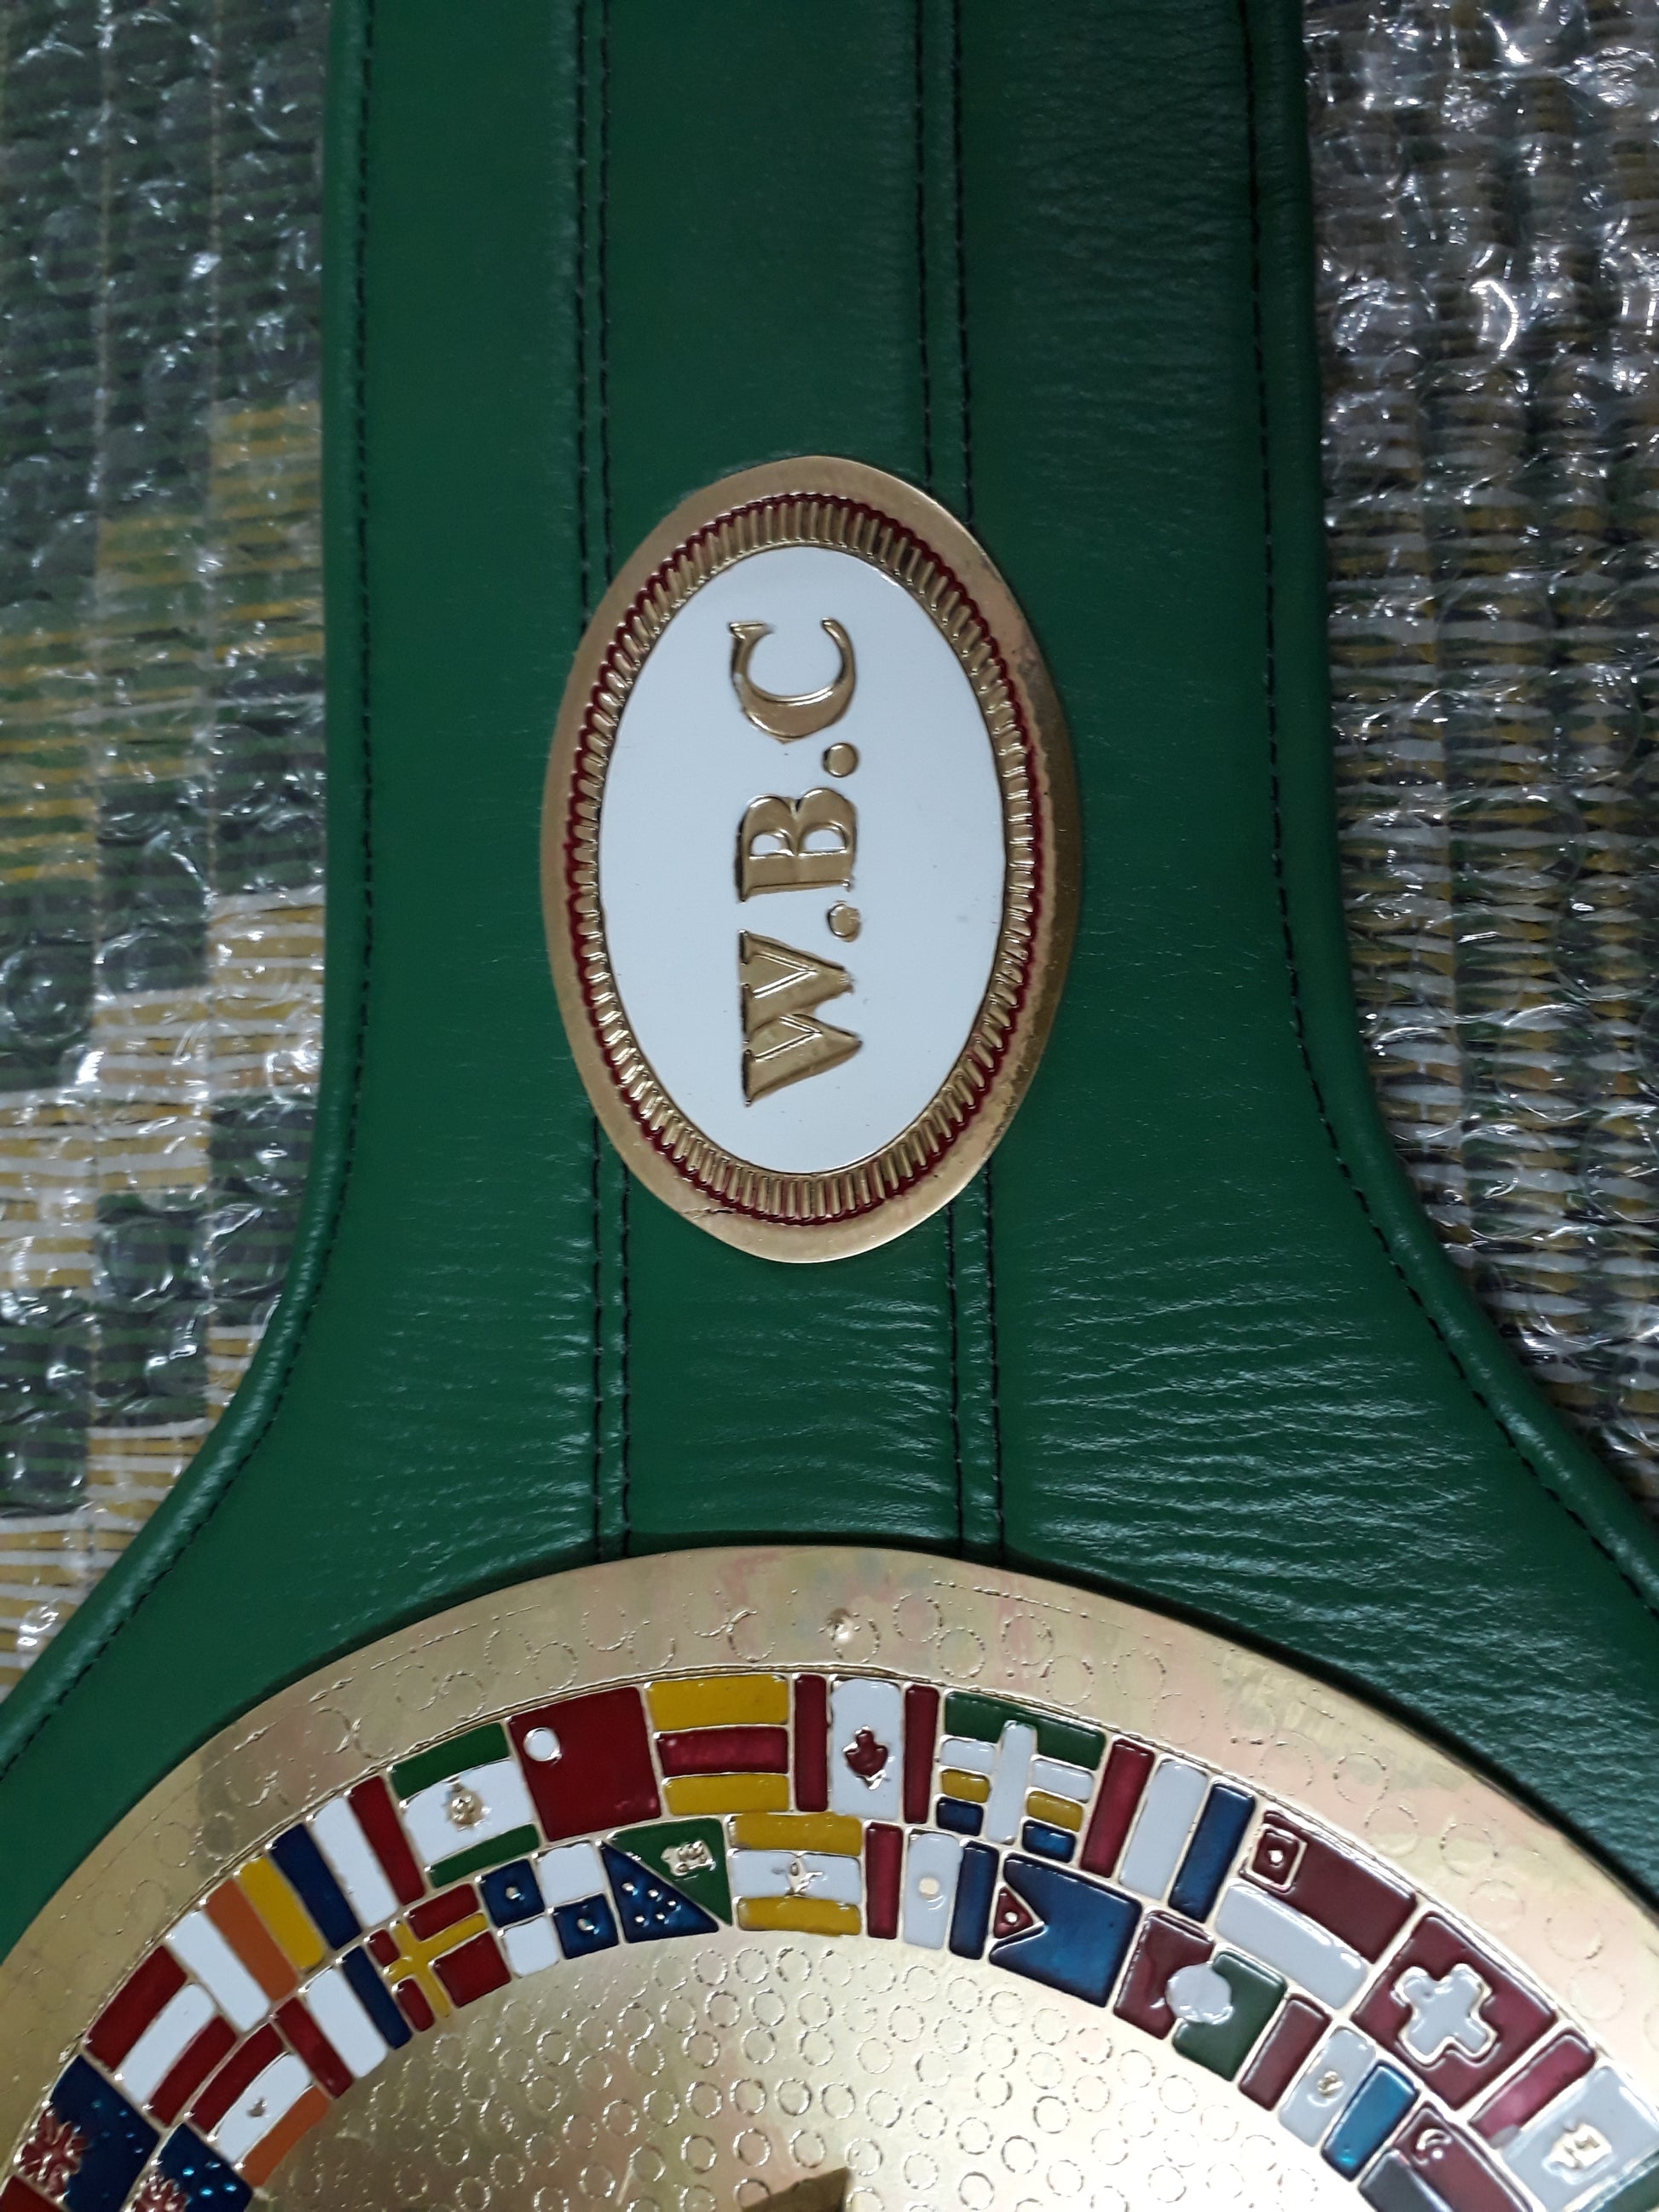 wbc boxing championship belt